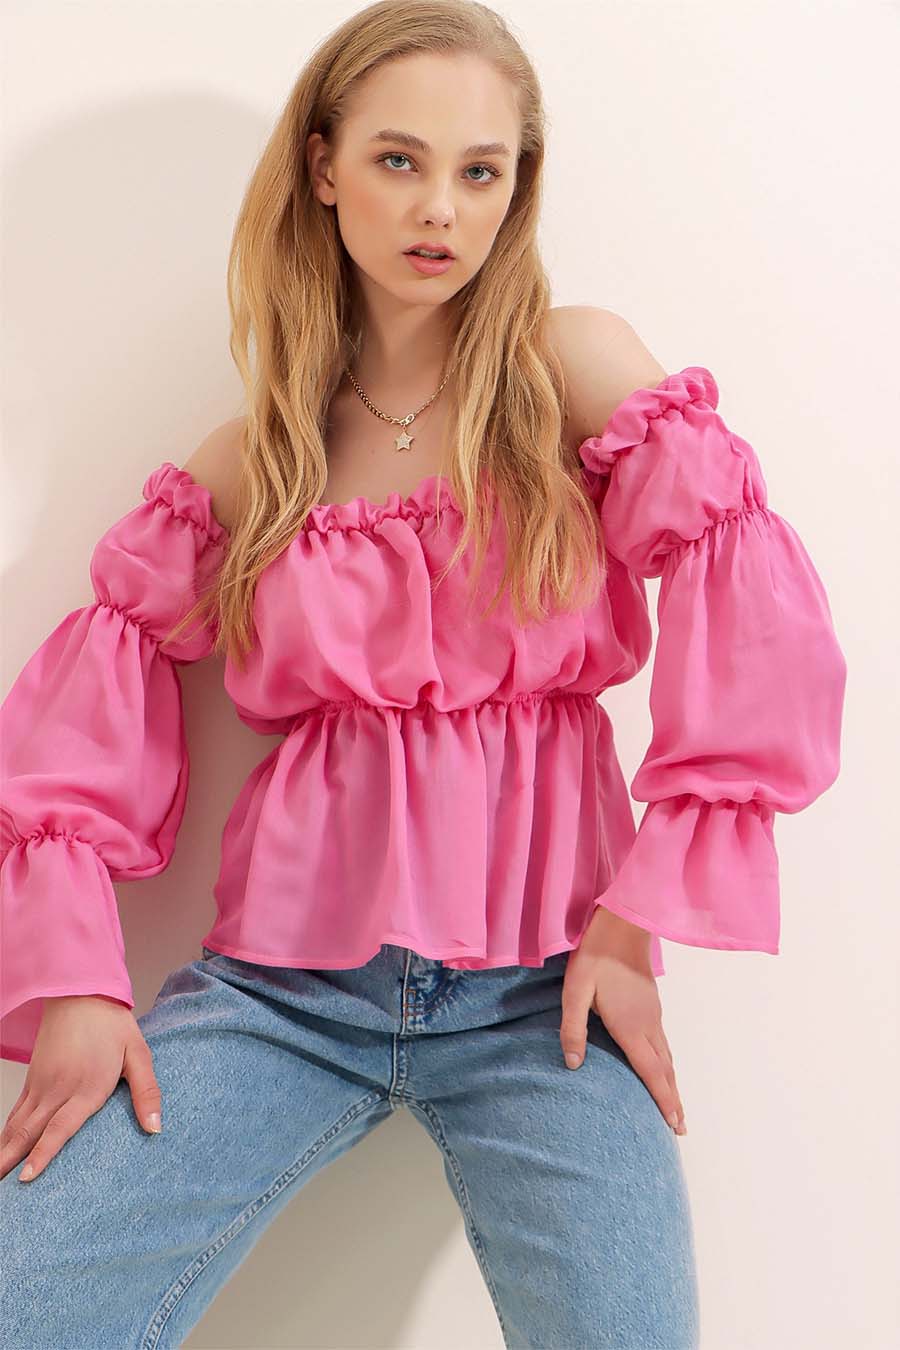 Γυναικεία μπλούζα Tina, Ροζ 4